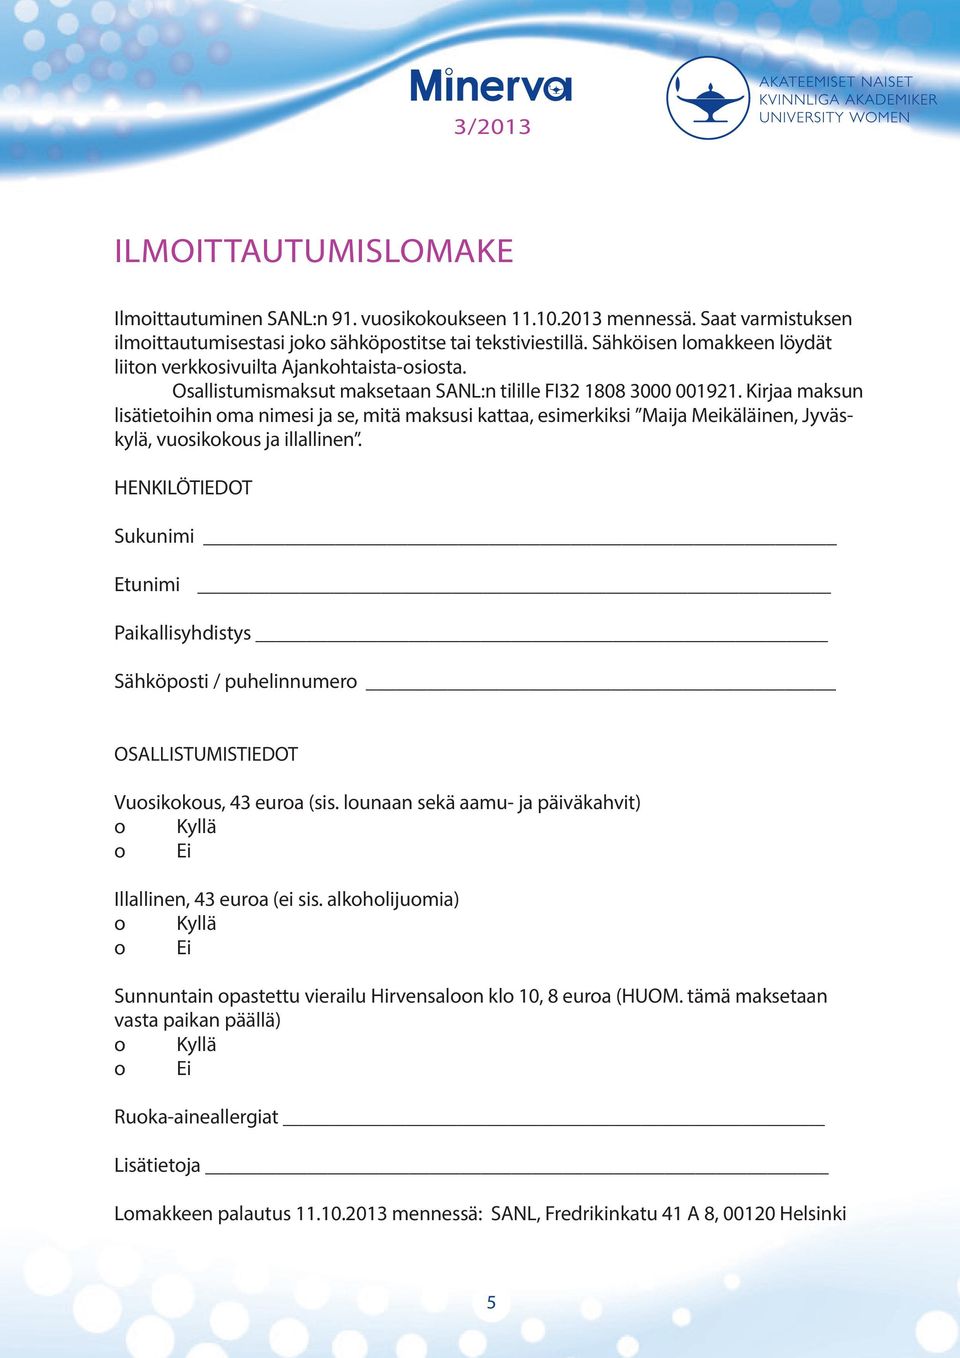 Kirjaa maksun lisätietoihin oma nimesi ja se, mitä maksusi kattaa, esimerkiksi Maija Meikäläinen, Jyväskylä, vuosikokous ja illallinen.